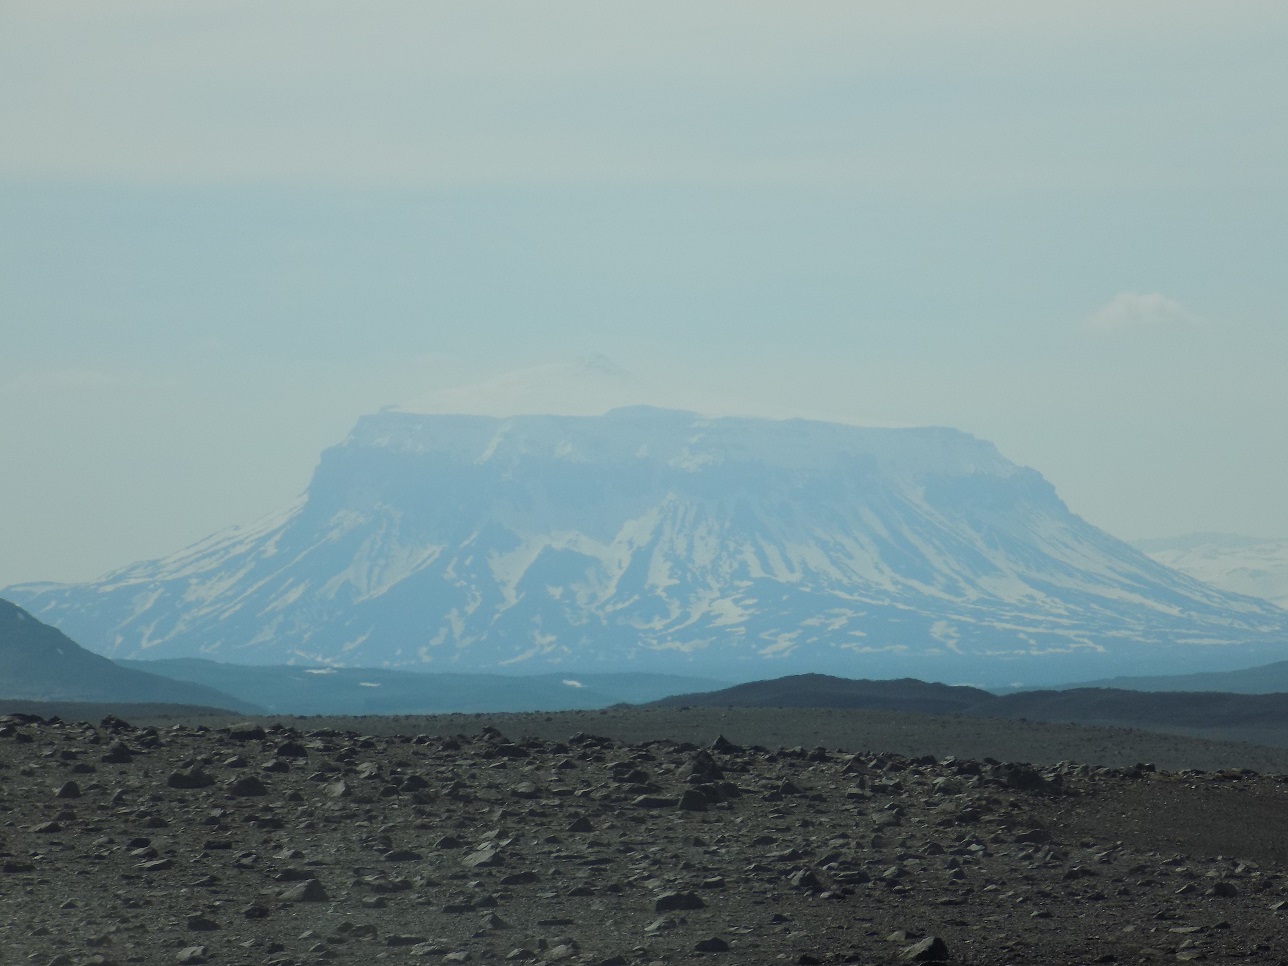 The Mountain Herðubreið, Iceland